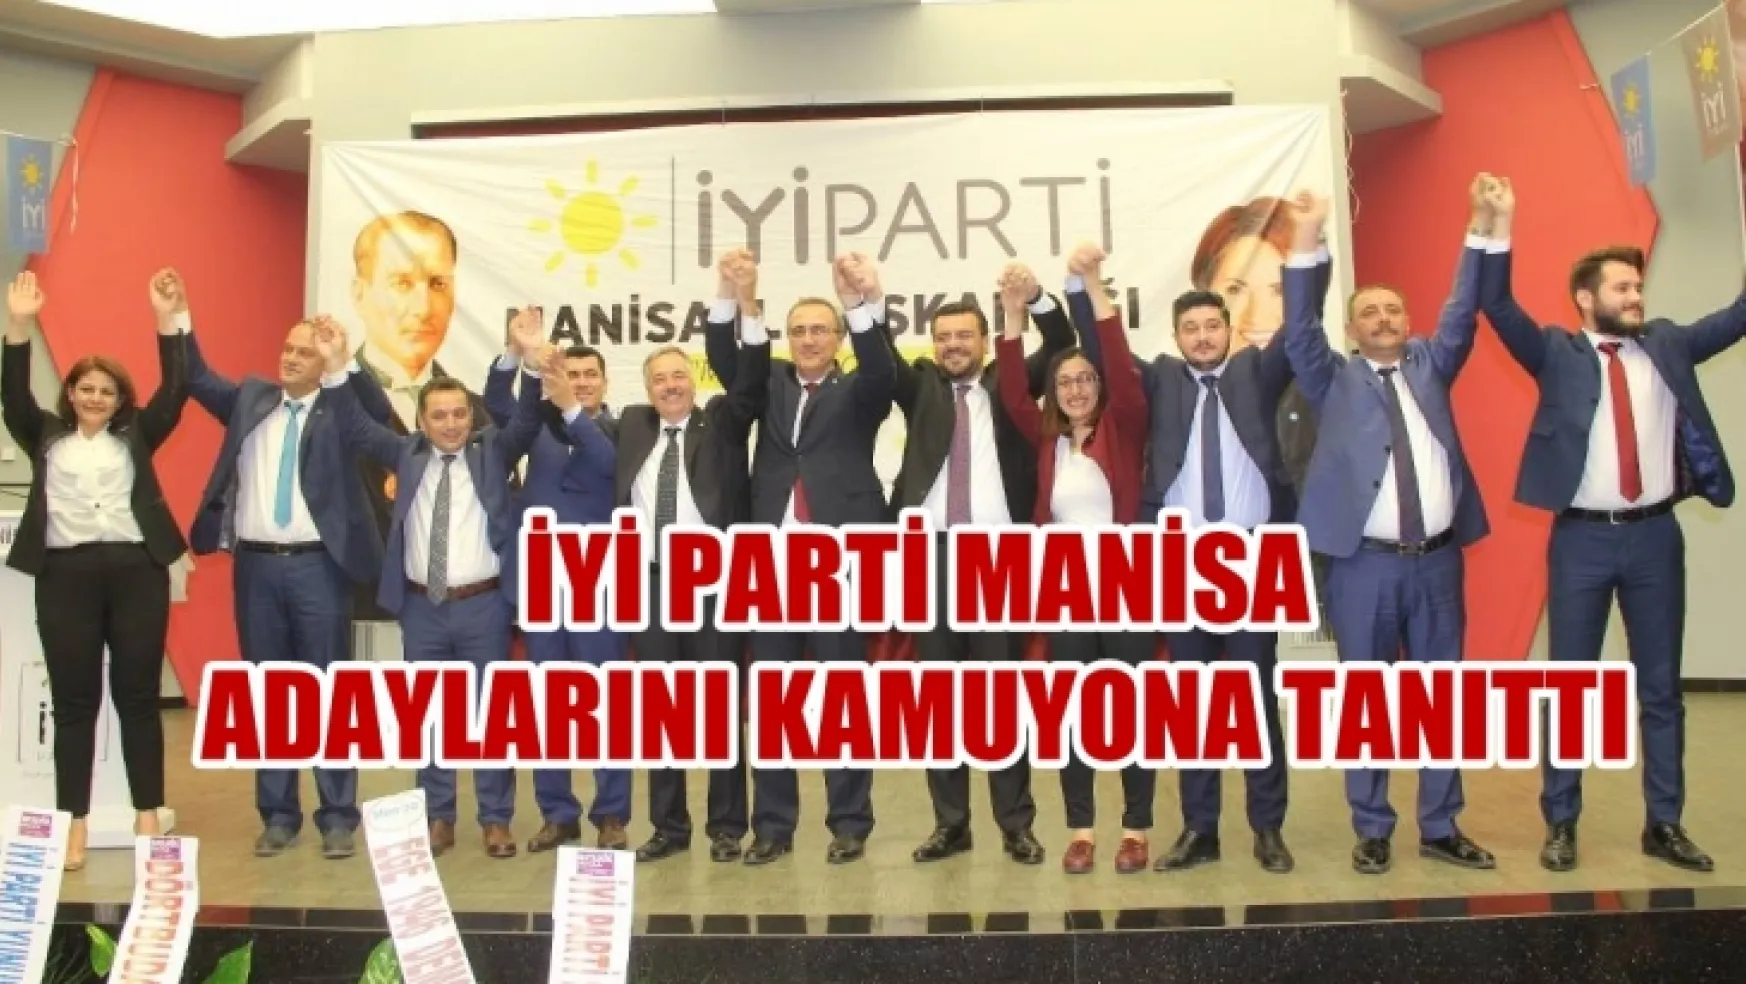 Yİ Parti'nin 27. Dönem Manisa Milletvekili adayları kamuoyuna tanıtıldı